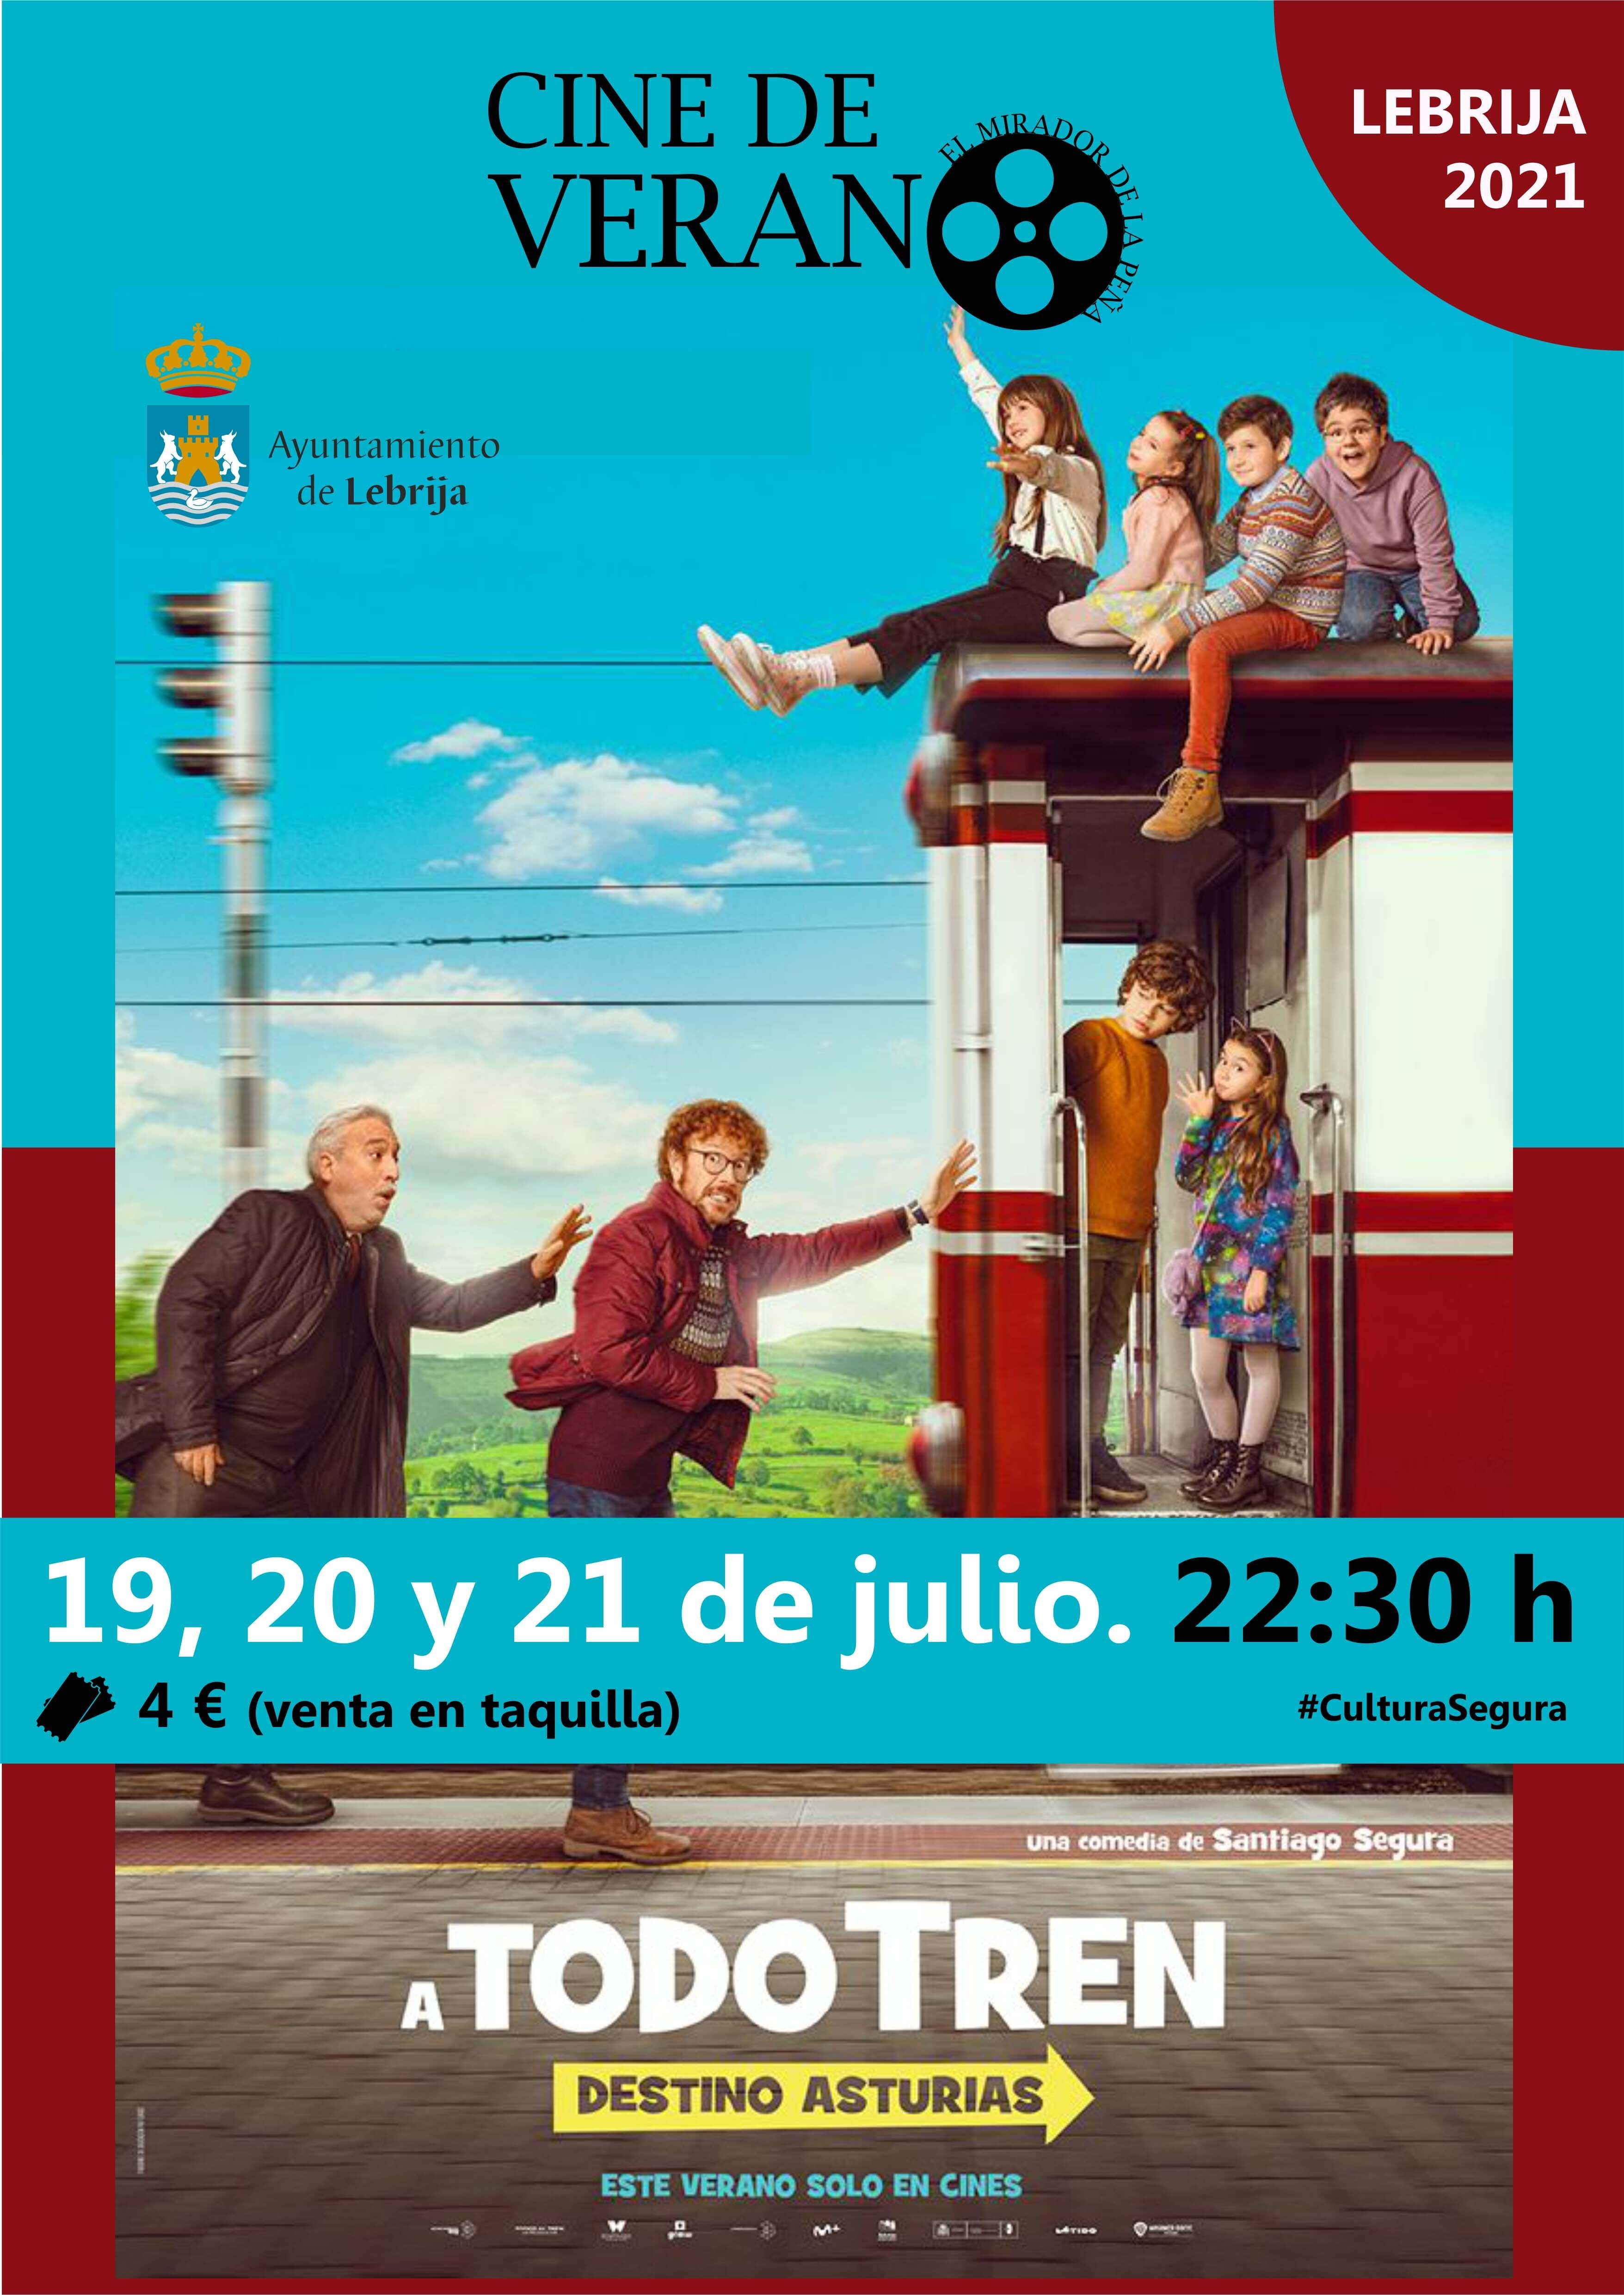 Cine verano juli 2021 (1)